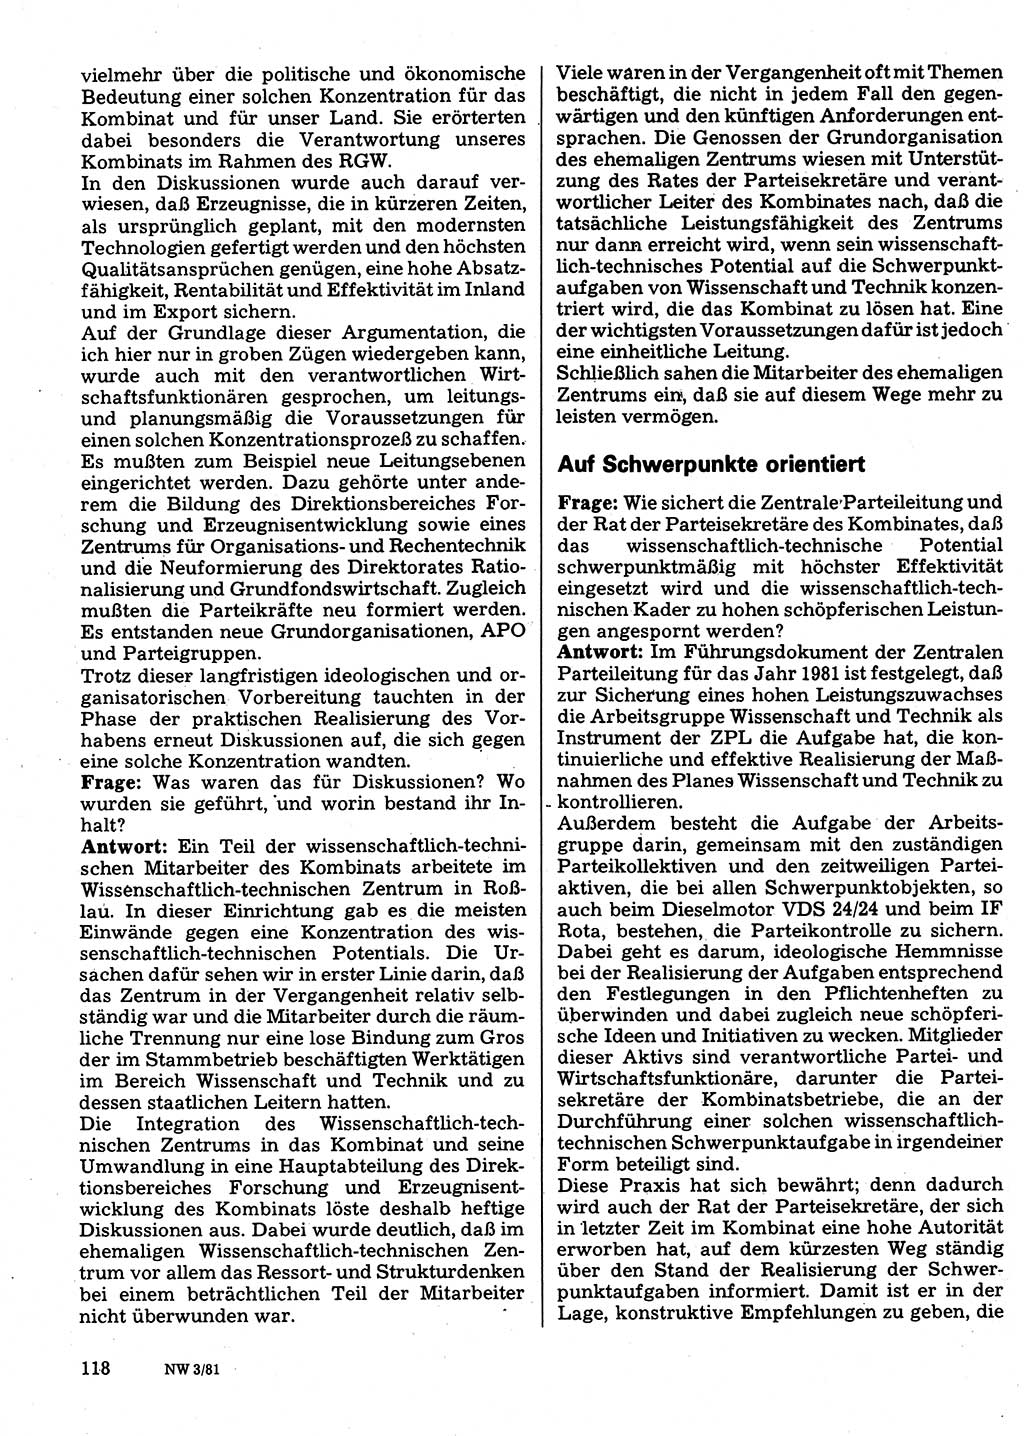 Neuer Weg (NW), Organ des Zentralkomitees (ZK) der SED (Sozialistische Einheitspartei Deutschlands) für Fragen des Parteilebens, 36. Jahrgang [Deutsche Demokratische Republik (DDR)] 1981, Seite 118 (NW ZK SED DDR 1981, S. 118)